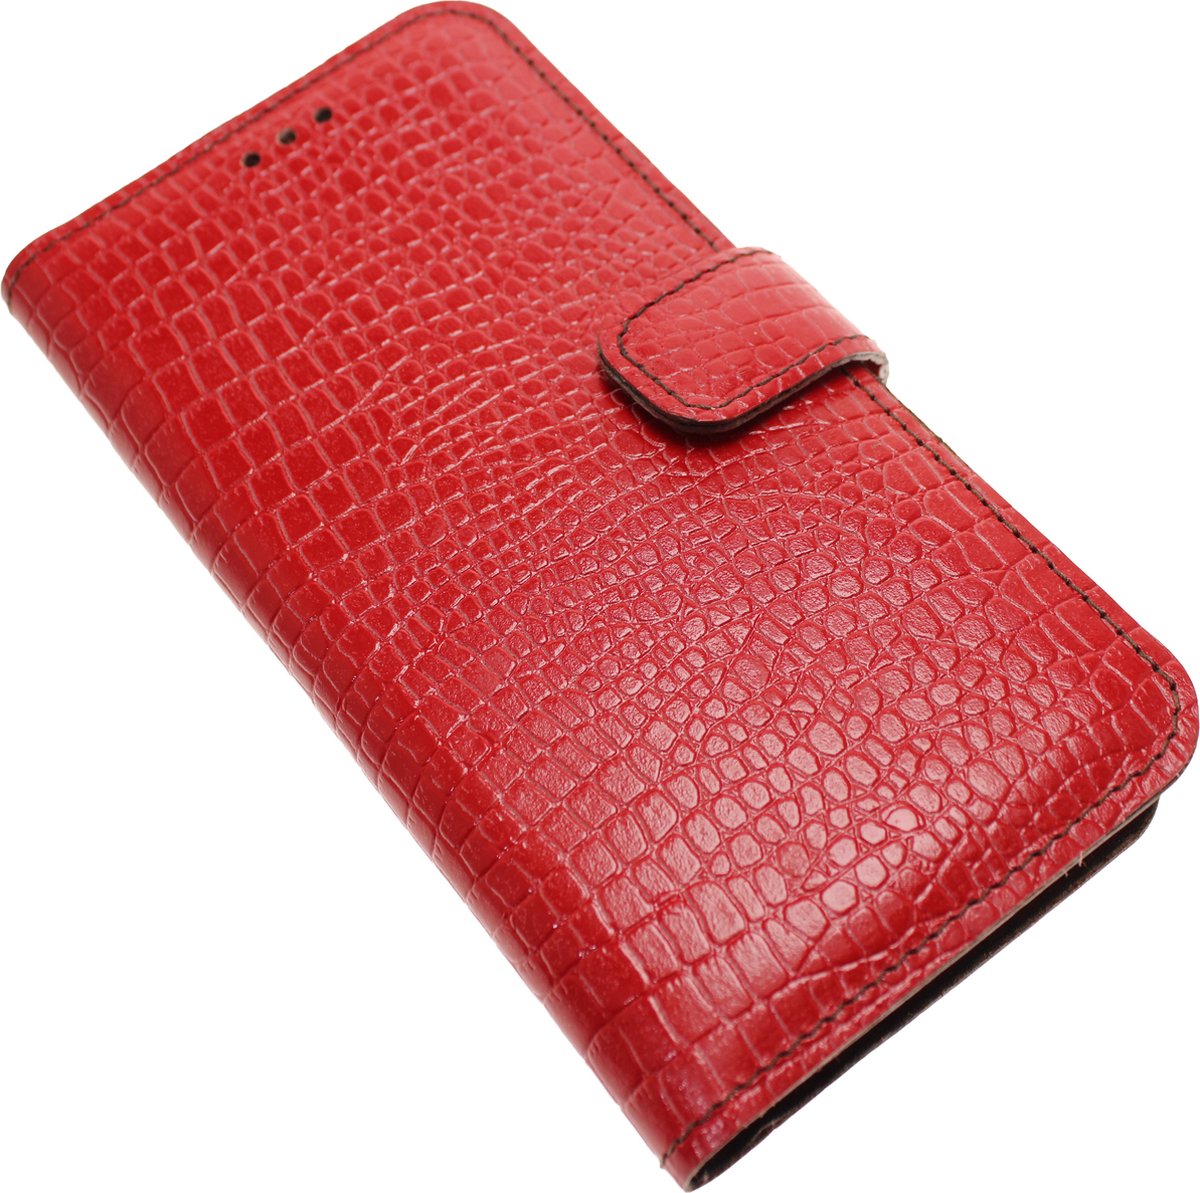 Made-NL Handgemaakte ( Apple iPhone 14 Pro ) book case Rood krokoillenprint reliëf kalfsleer robuuste hoesje